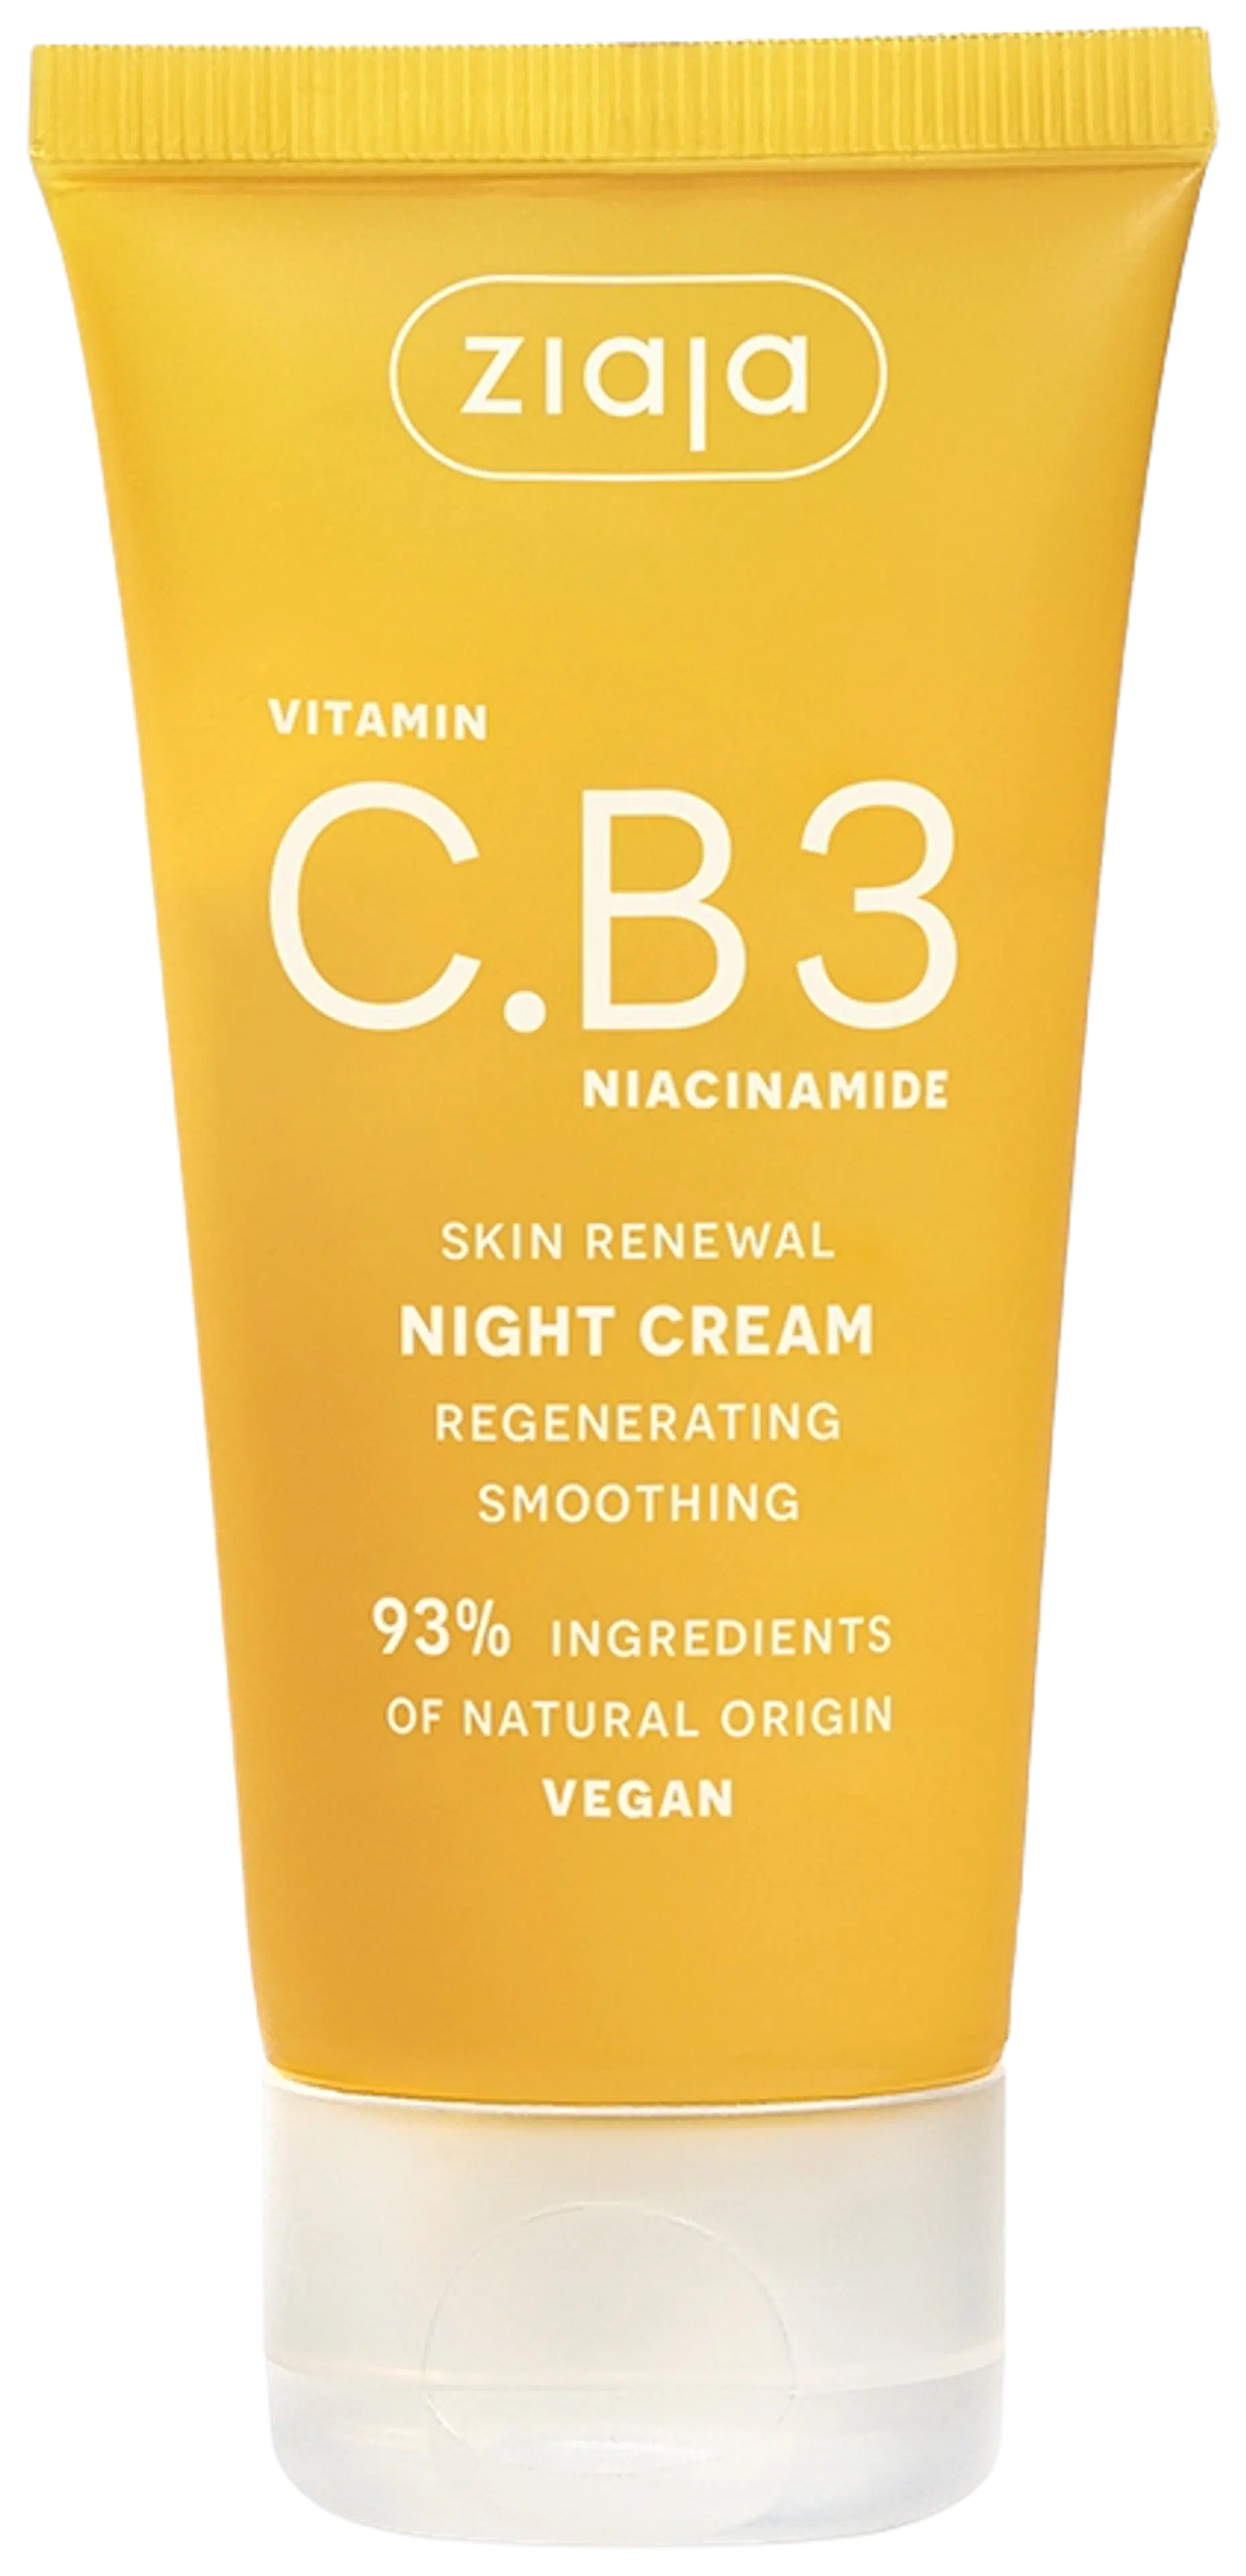 Ziaja C.B3 vitamiini yövoide-naamio 50 ml